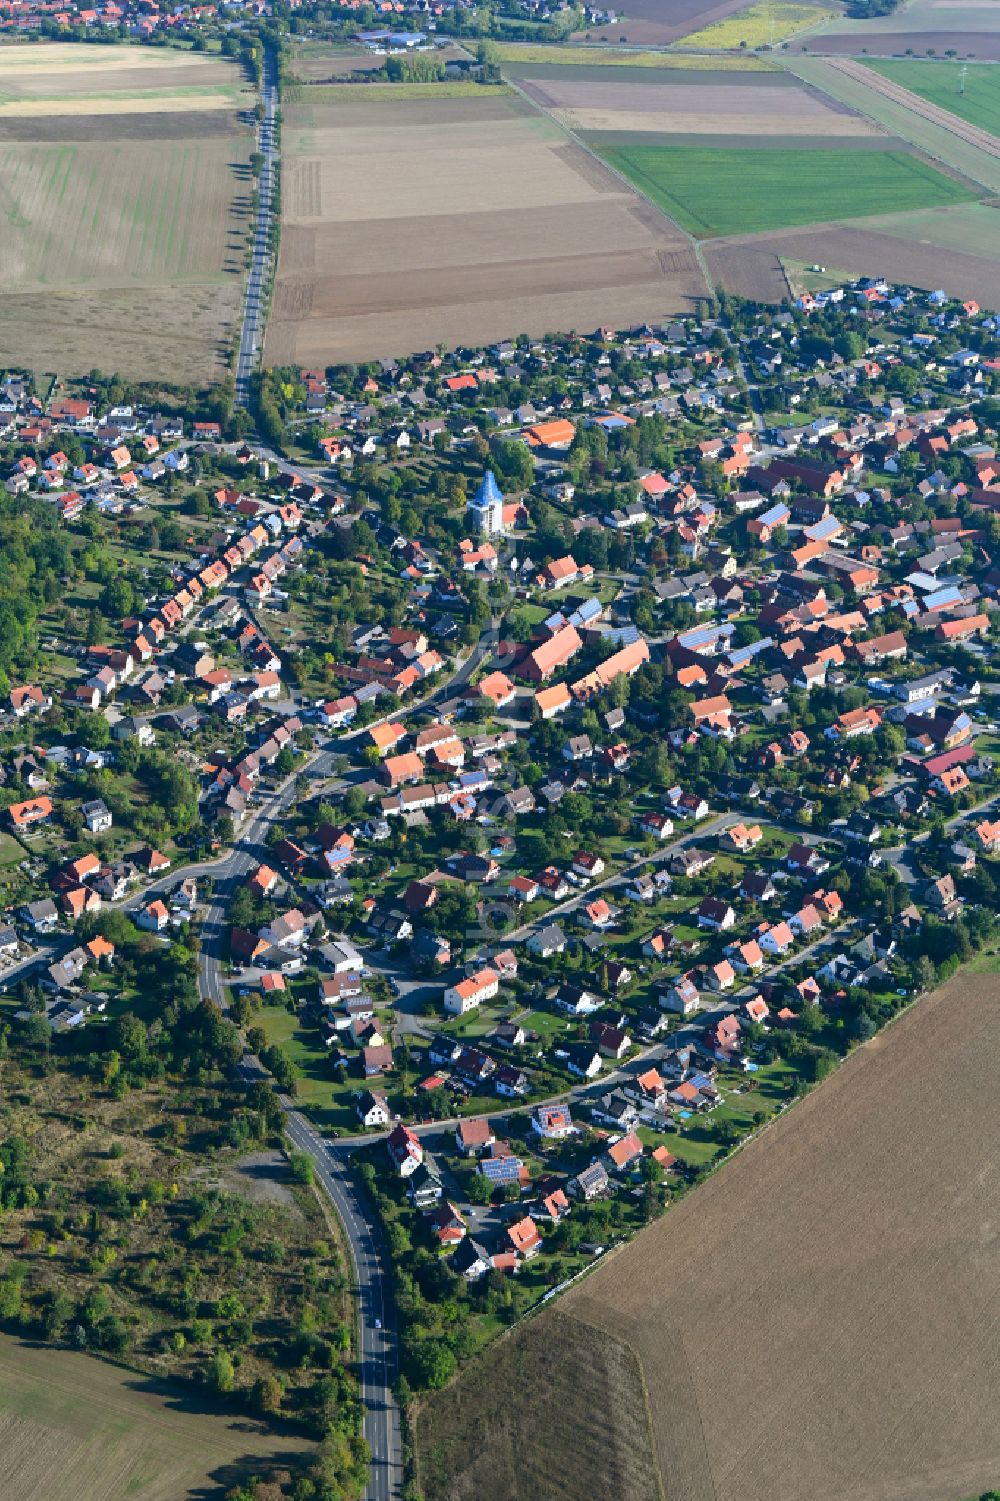 Immenrode aus der Vogelperspektive: Stadtgebiet inmitten der Landwirtschaft in Immenrode im Bundesland Niedersachsen, Deutschland